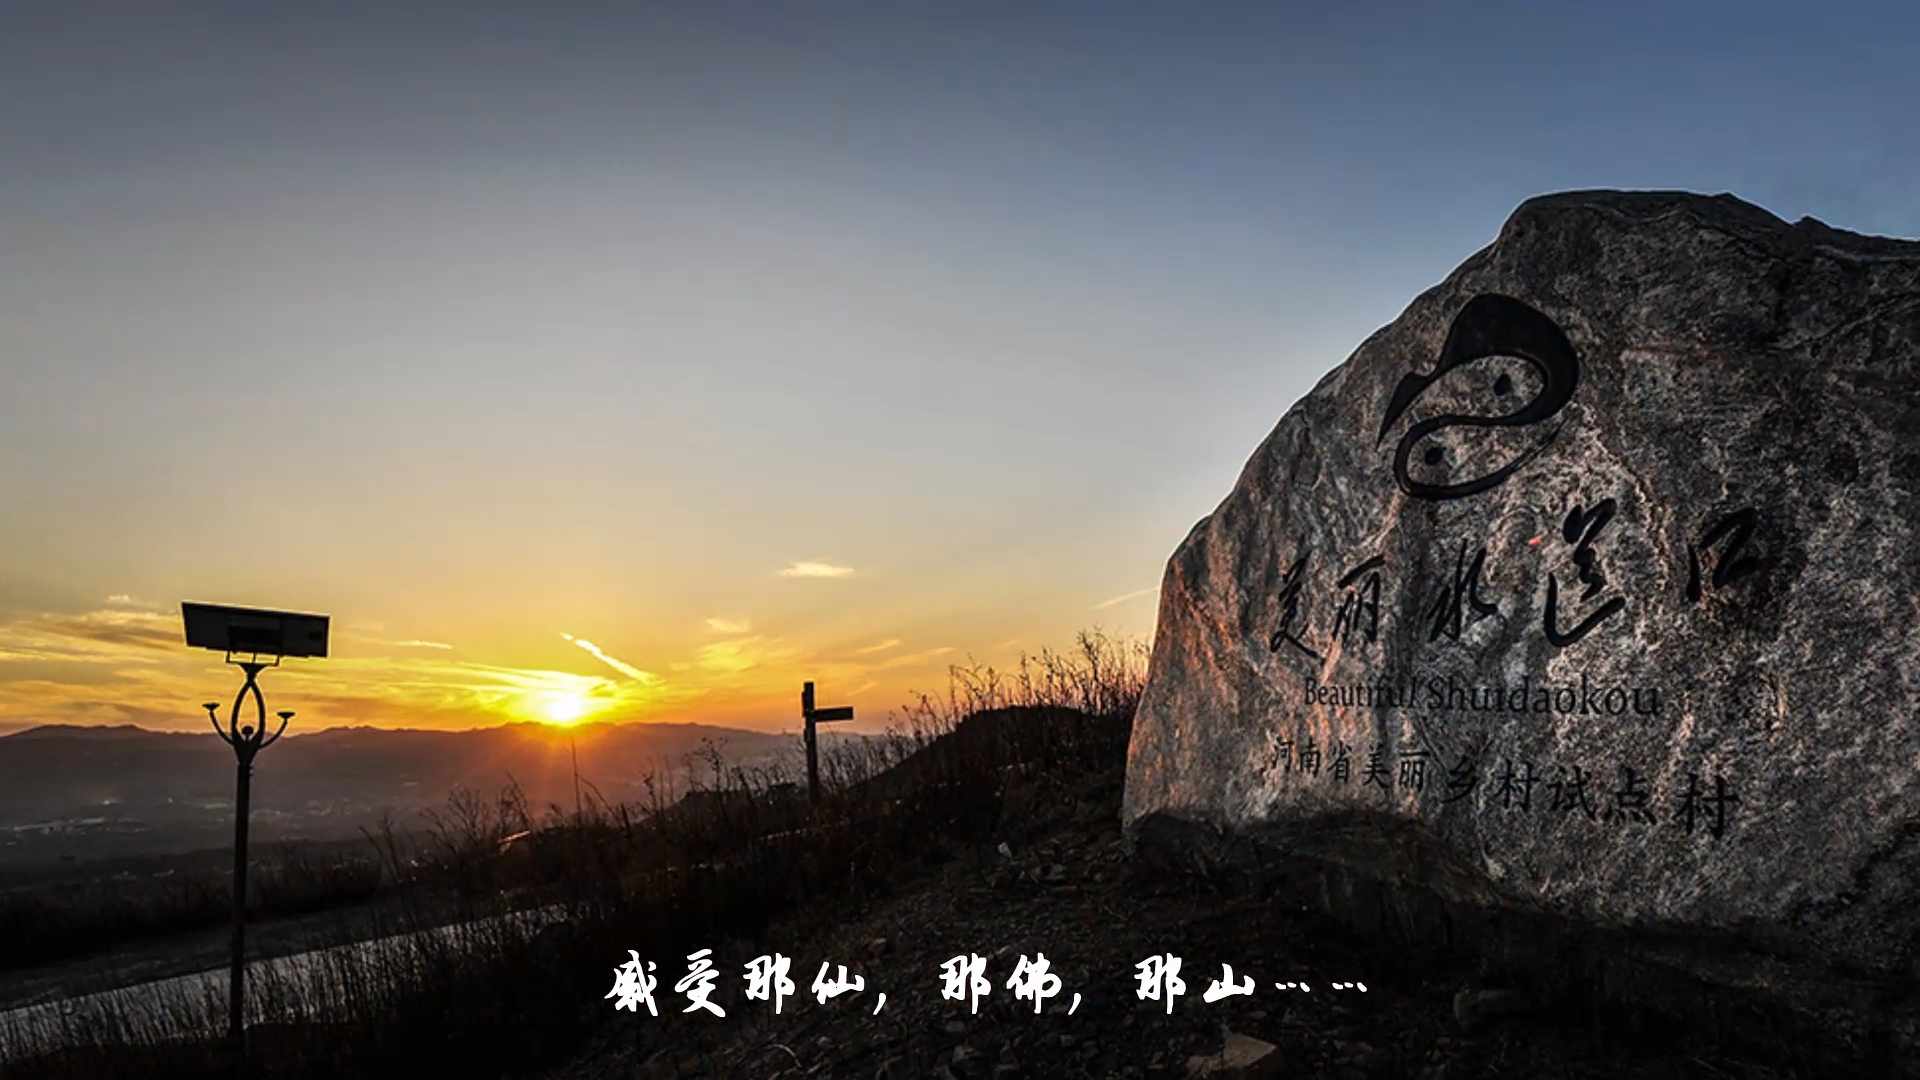 牧客影视承制的中原佛山旅游风光宣传片交片